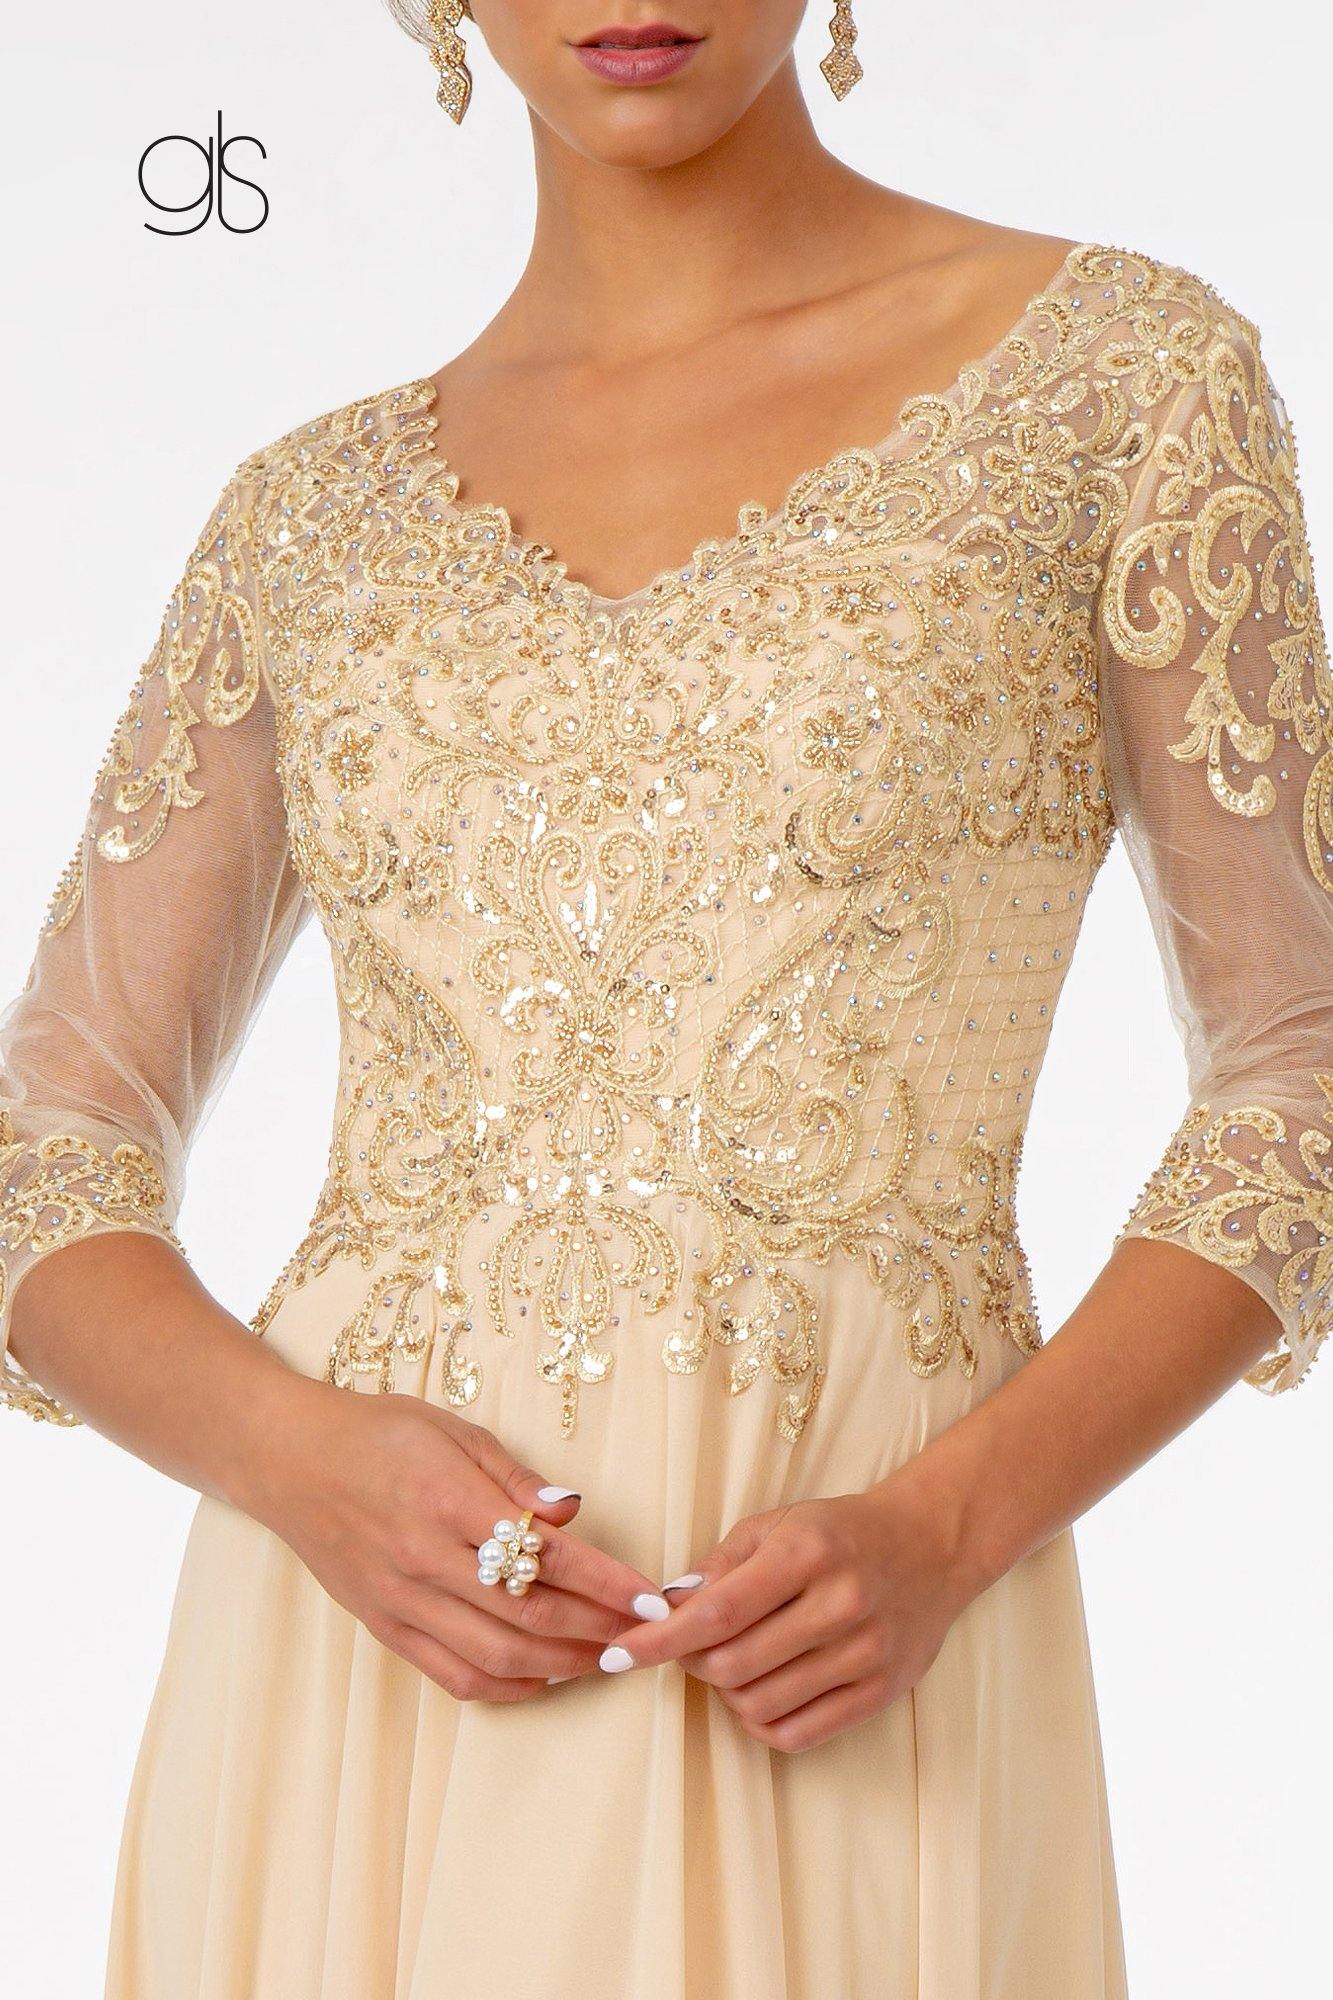 Embroidered Bodice Evening Long Formal Dress - The Dress Outlet Elizabeth K